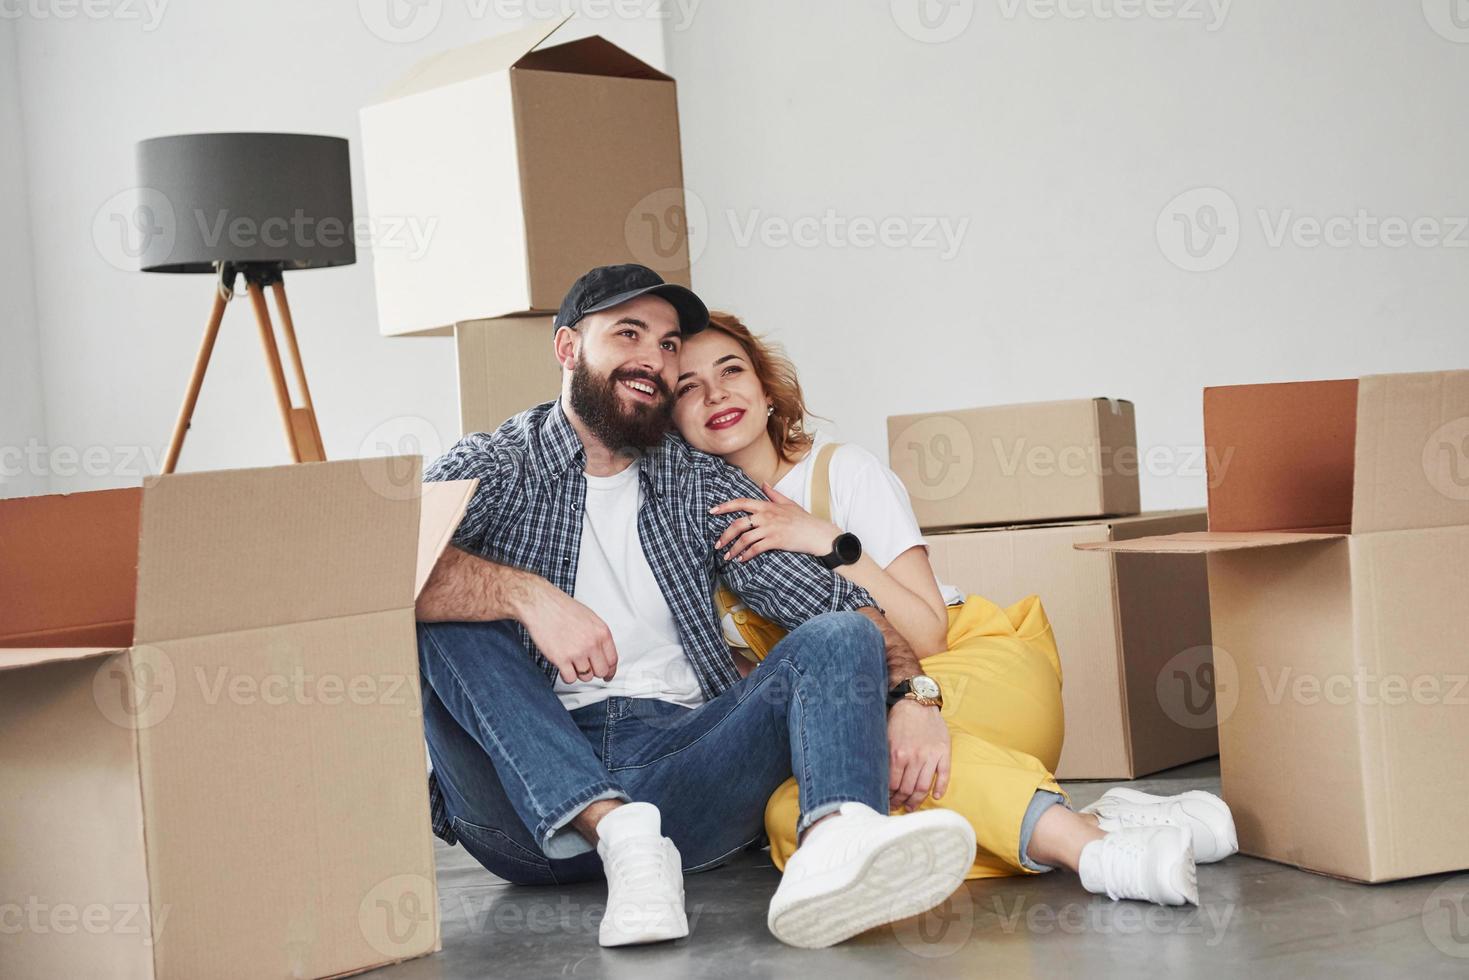 conversa ativa. casal feliz juntos em sua nova casa. concepção de movimento foto